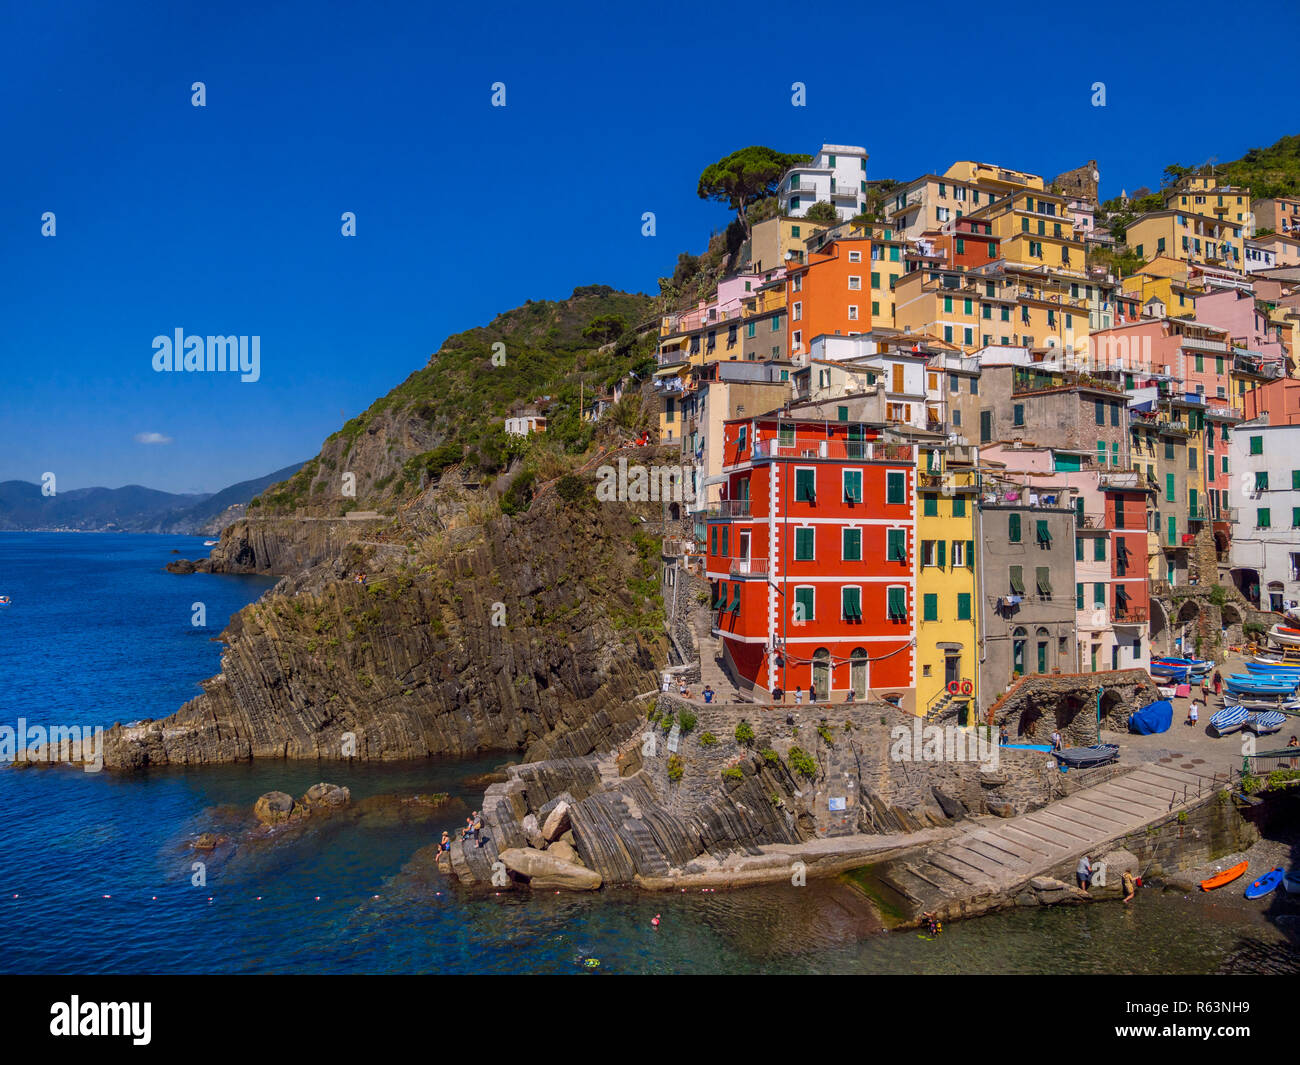 Town view with harbor and colorful houses, Riomaggiore, Cinque Terre, La Spezia, Liguria, Italy, Europe Stock Photo